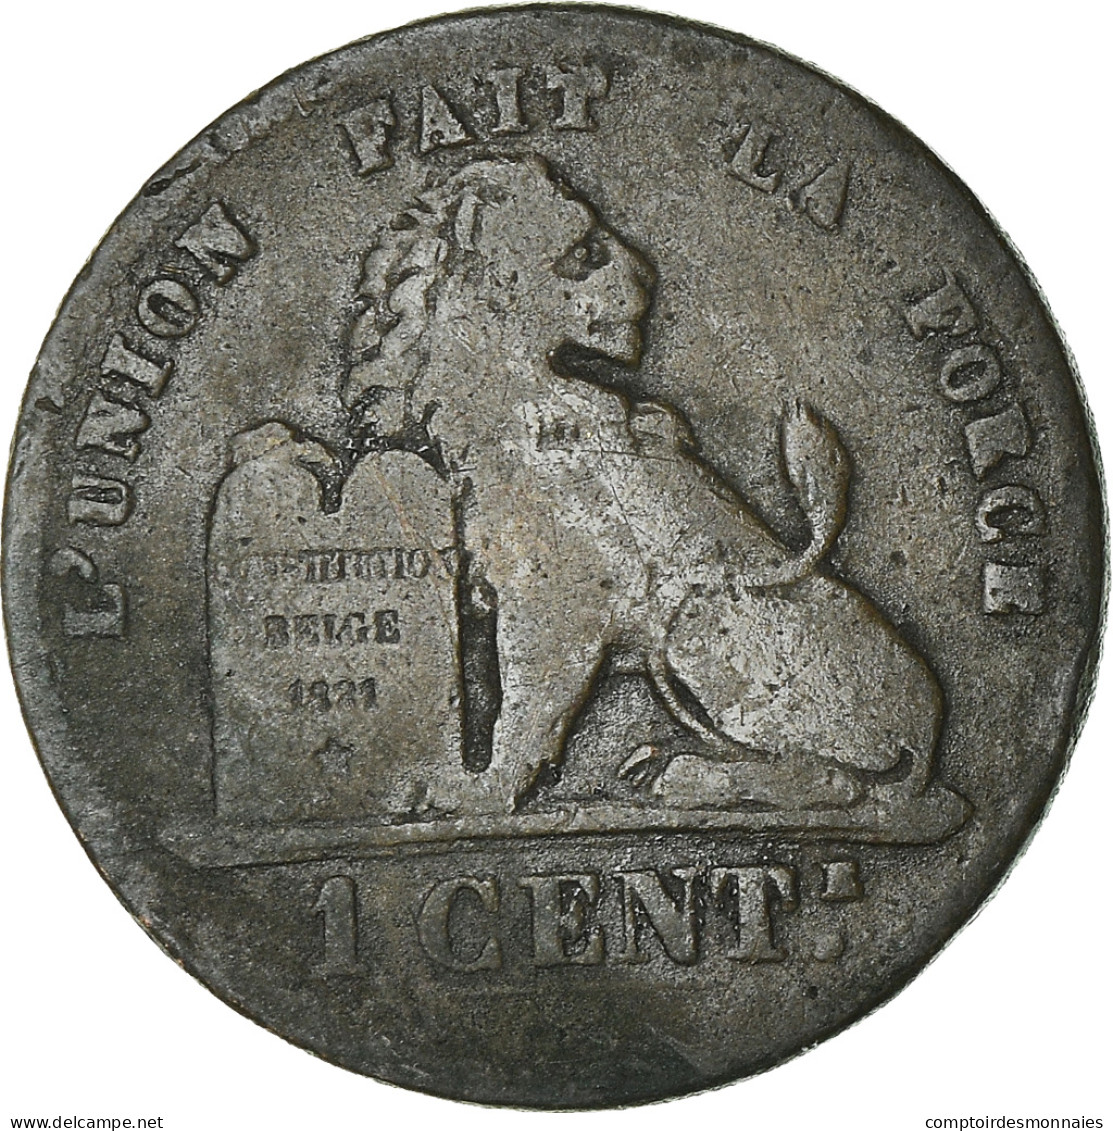 Monnaie, Belgique, Leopold II, Centime, 1874, B+, Cuivre, KM:33.1 - 1 Centime